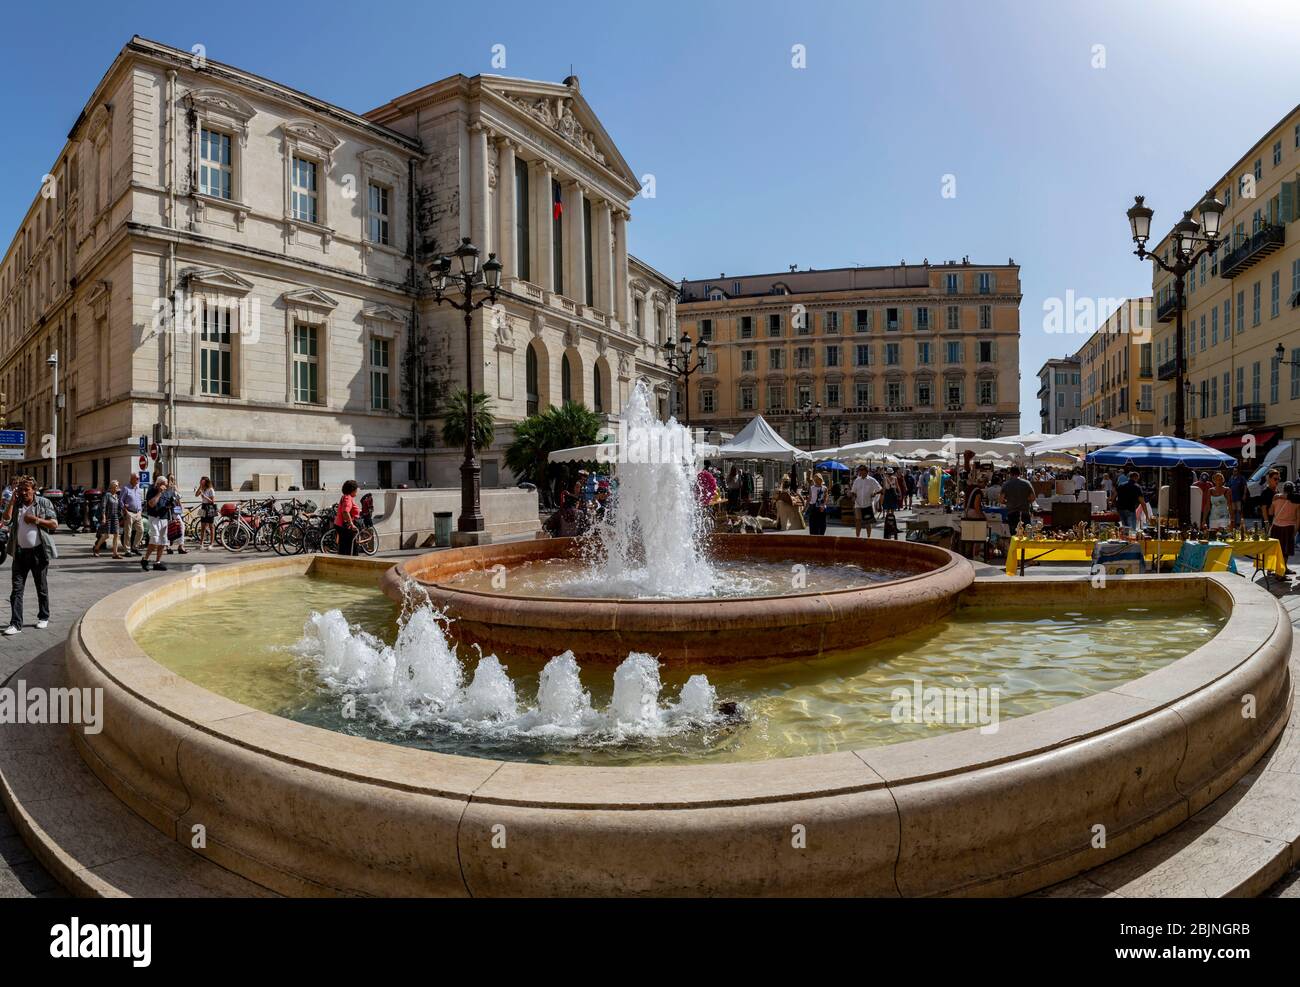 Place du Palais de Justice fountain, Nice, Cote d'Azur, Provence, France. Stock Photo